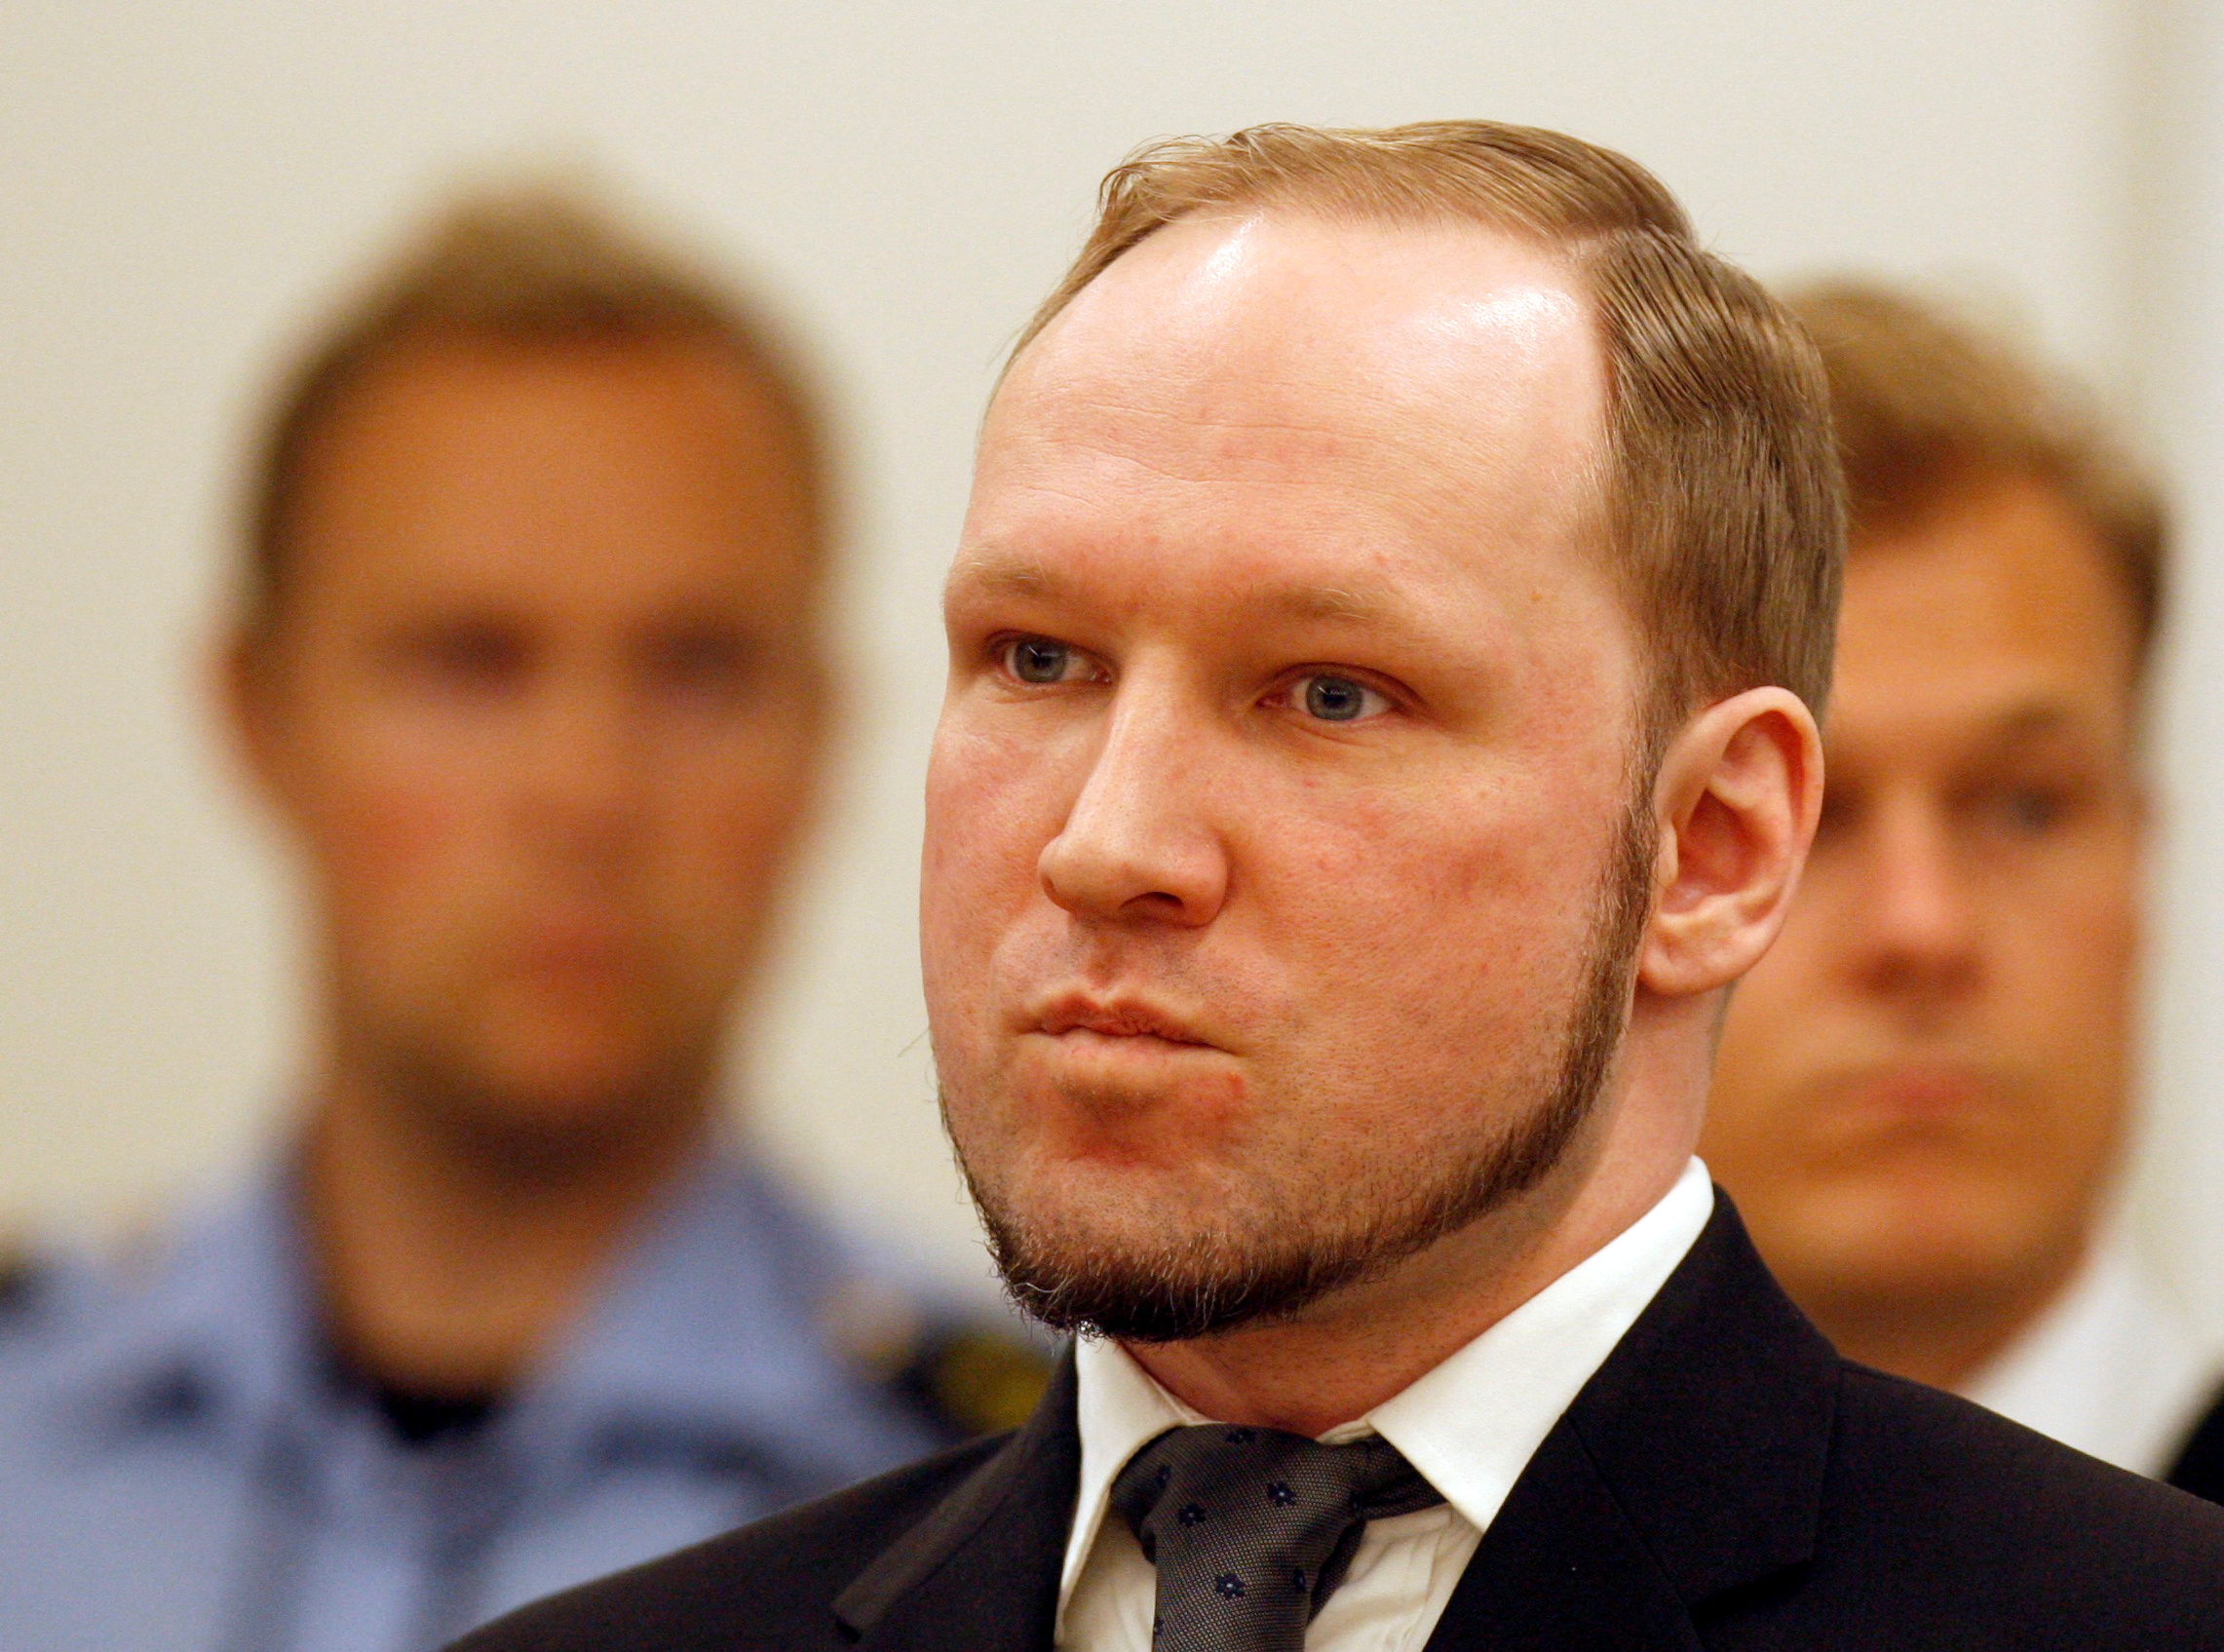 Νορβηγία: Εξετάζεται το αίτημα αποφυλάκισης του Άντερς Μπρέιβικ, 10 χρόνια μετά το πρωτοφανές μακελειό